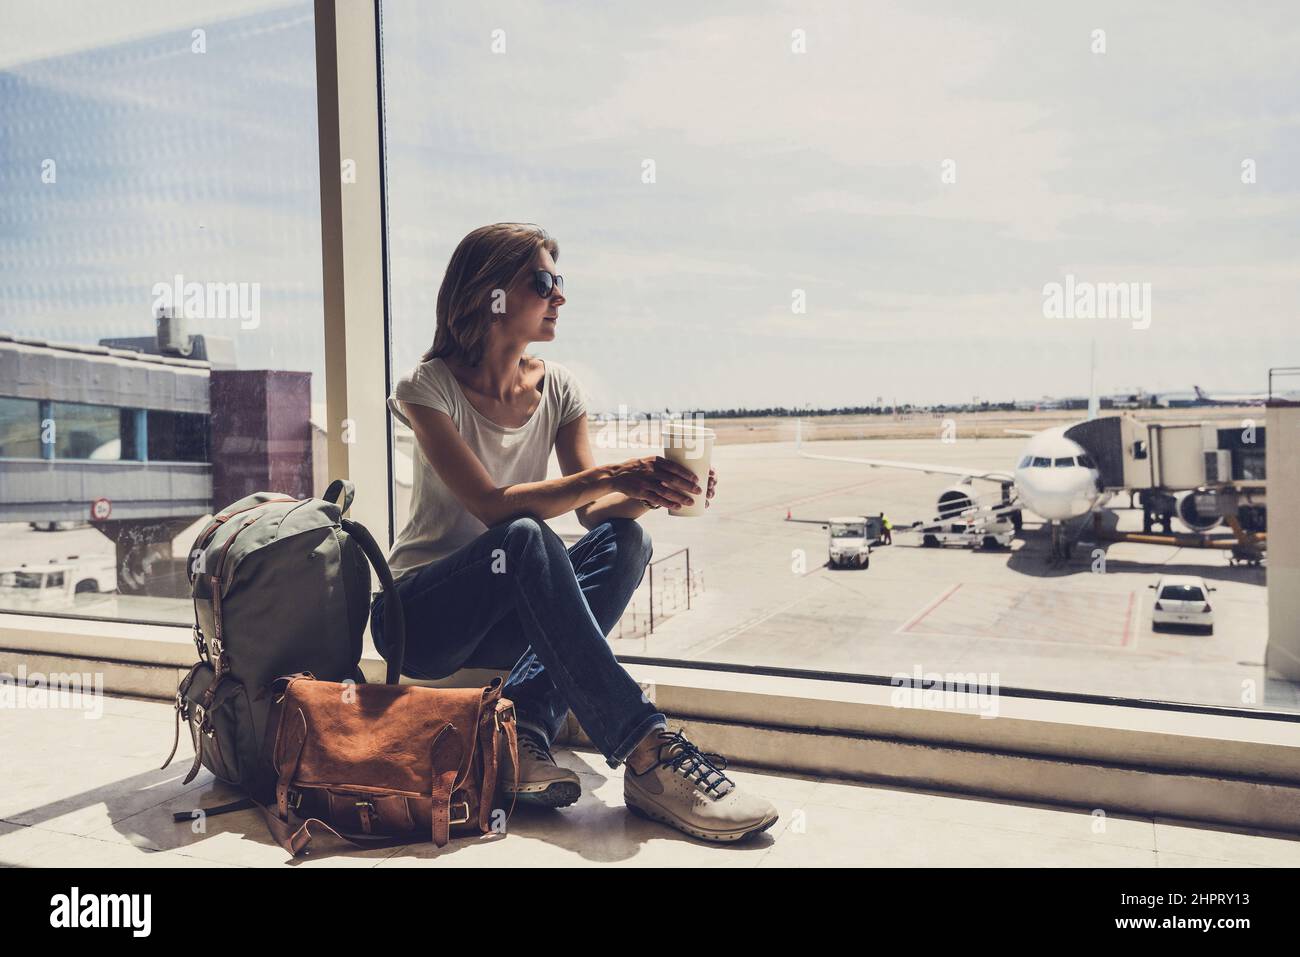 Junge Frau am Flughafen, die durch das Fenster auf Flugzeuge schaut und Kaffee trinkt, Reisen, Urlaub und aktives Lifestyle-Konzept Stockfoto